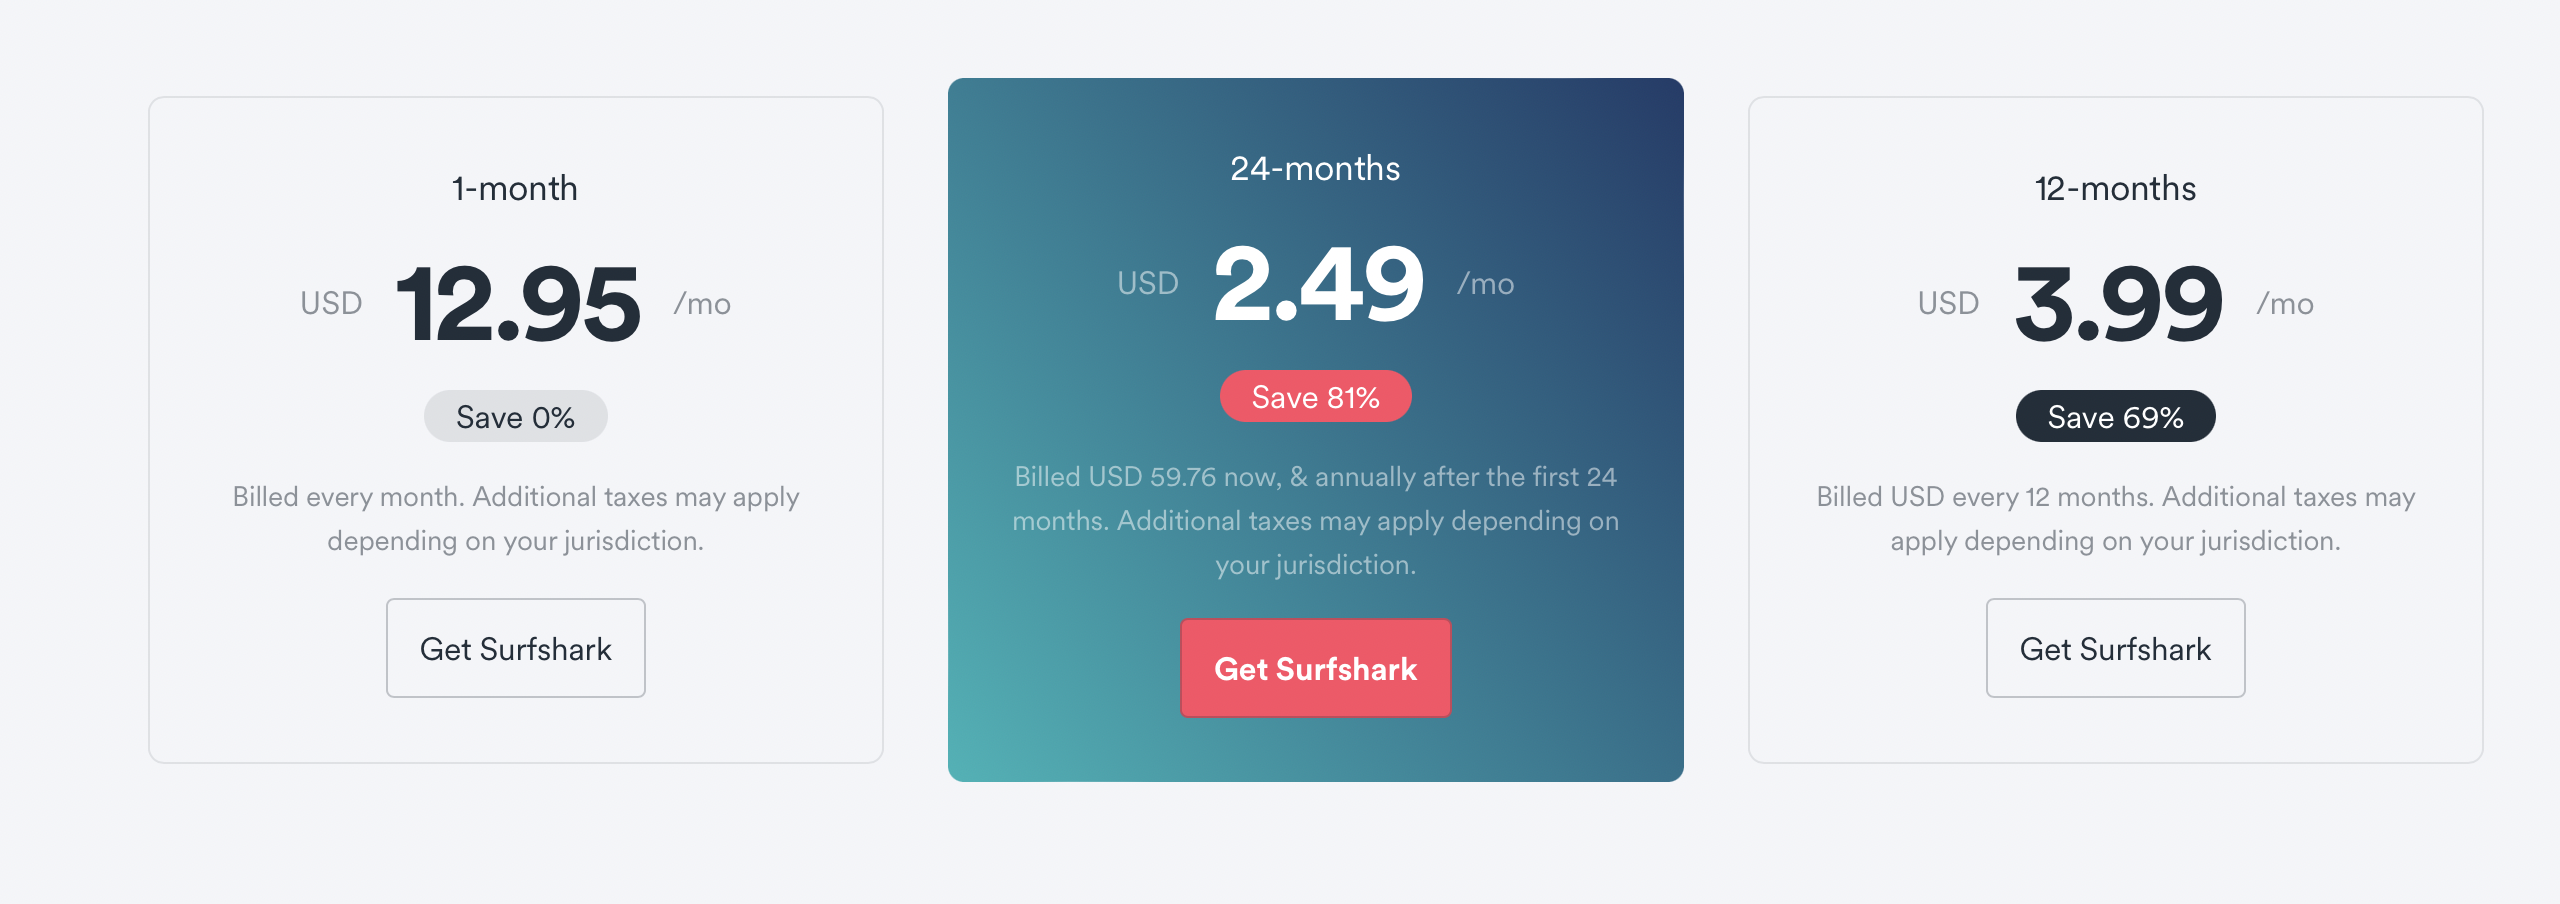 surfshark-prices